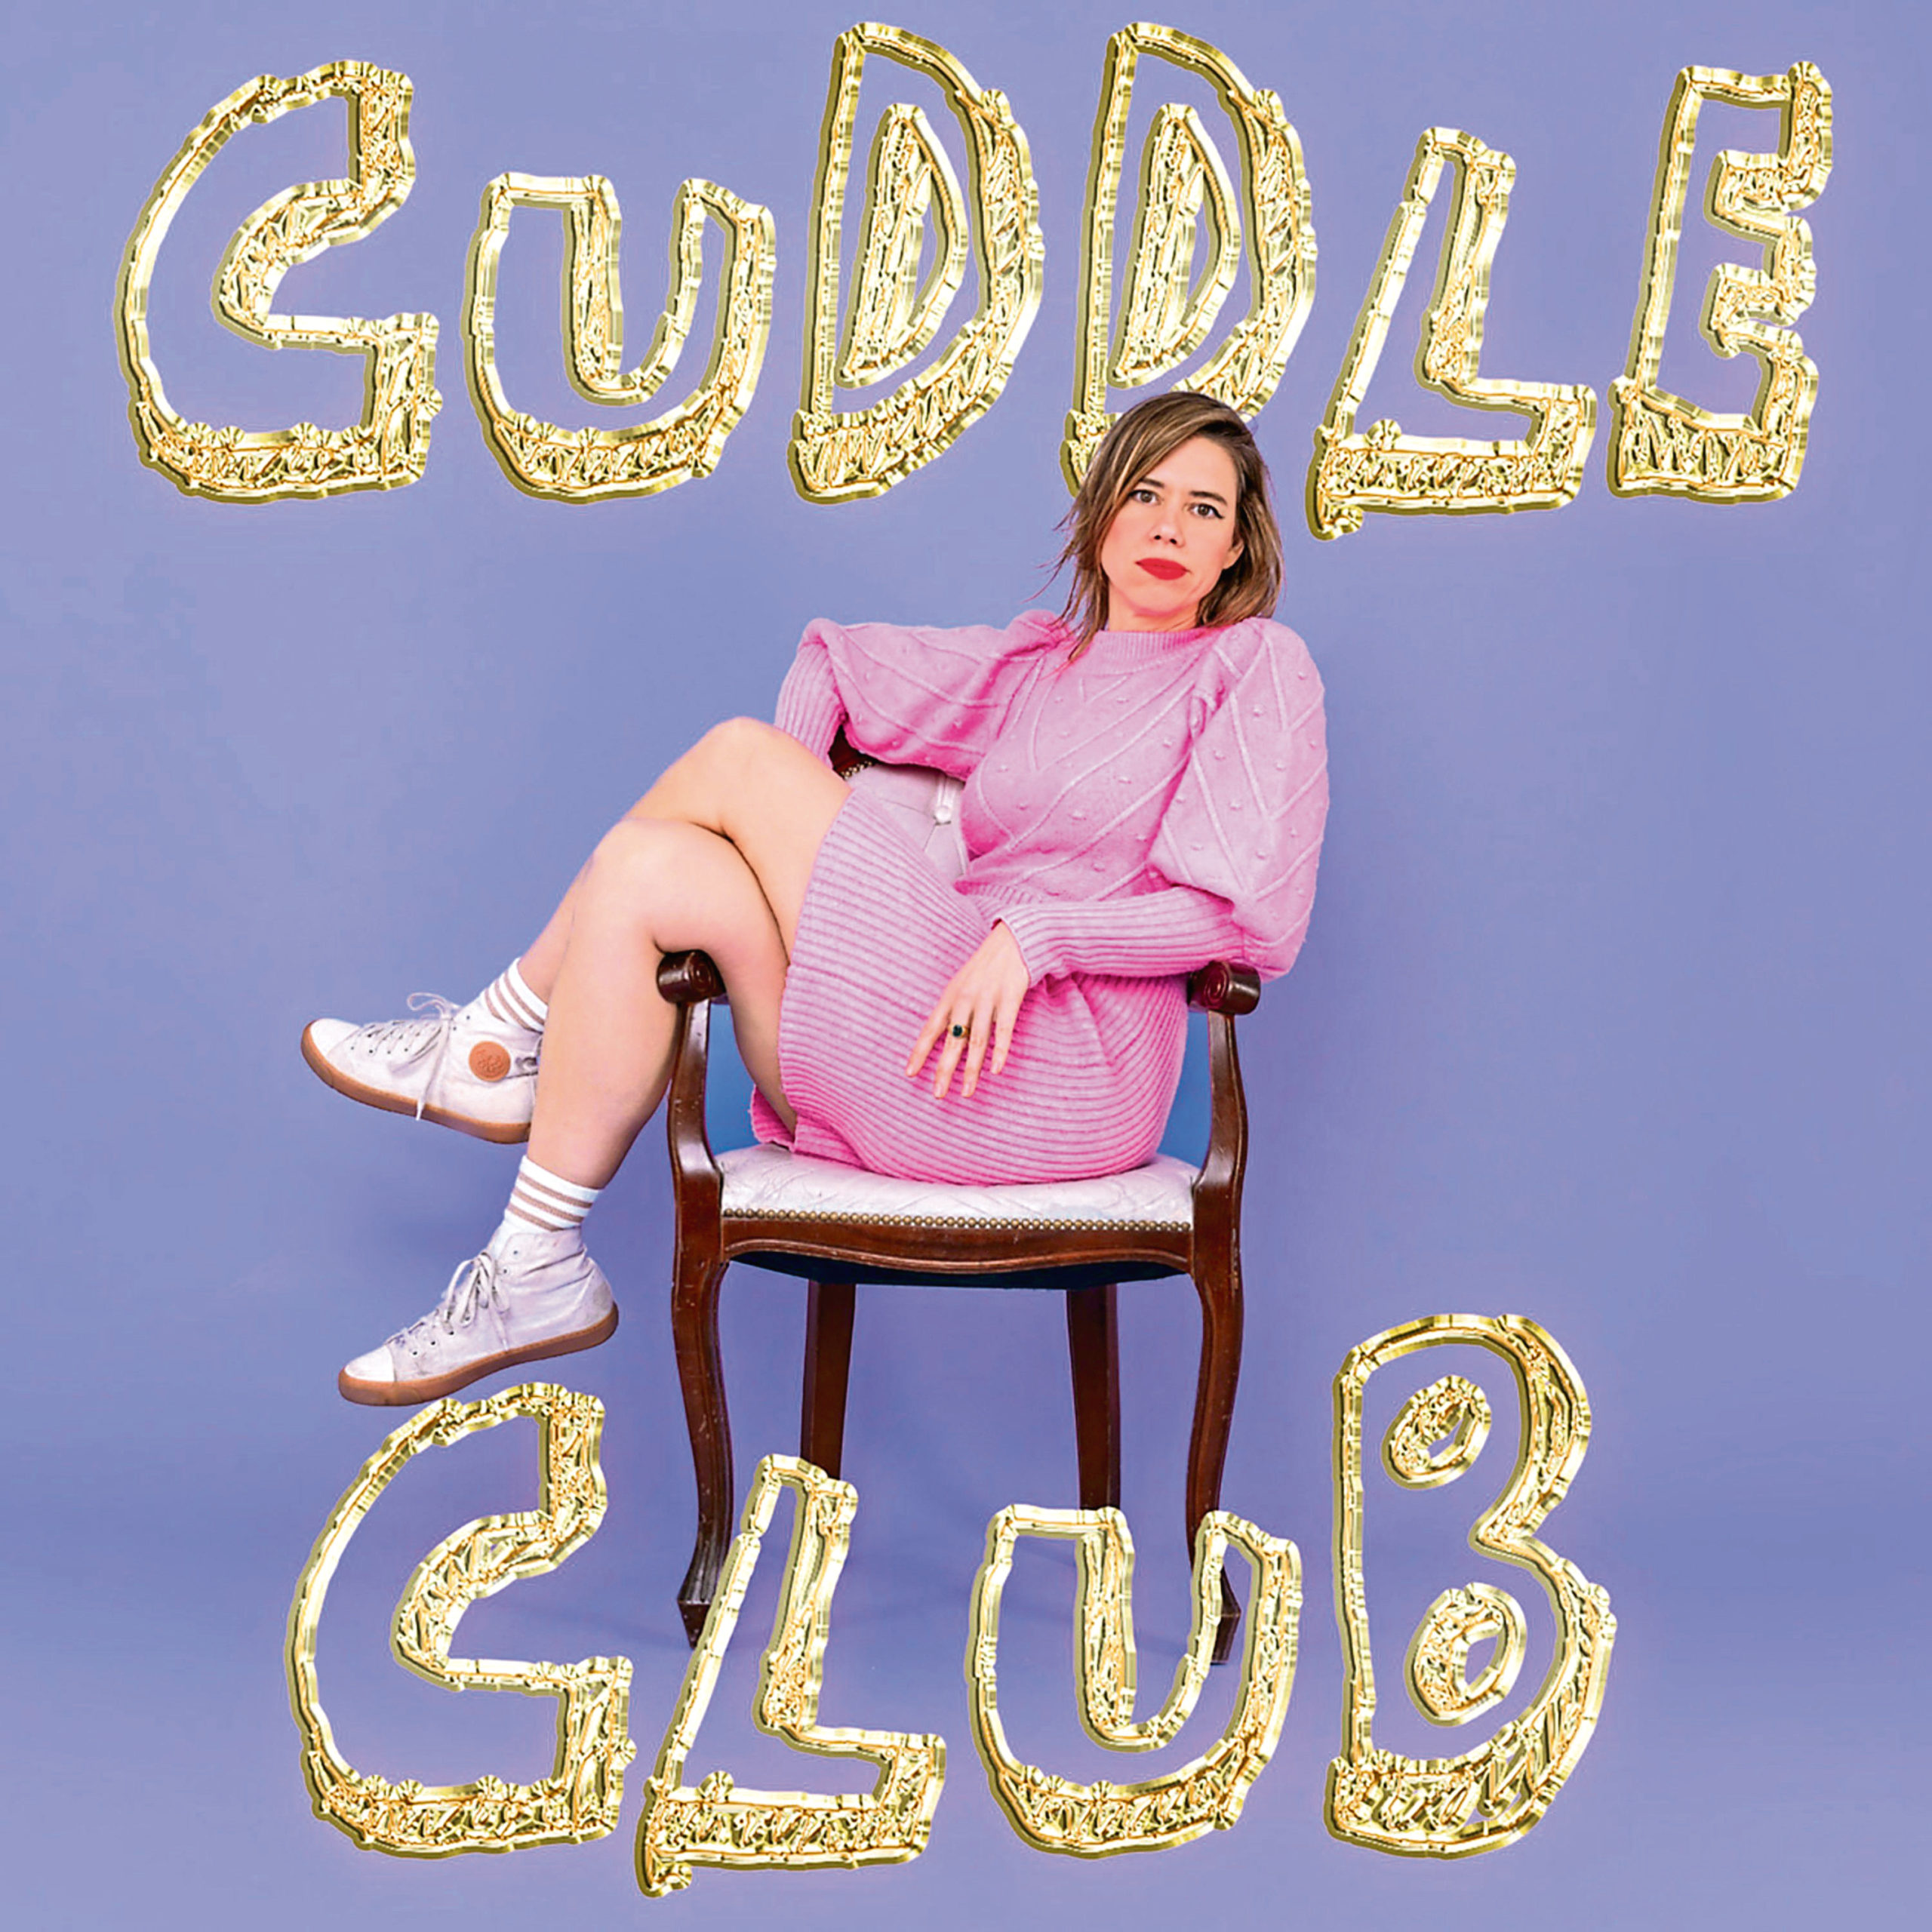 cuddle club